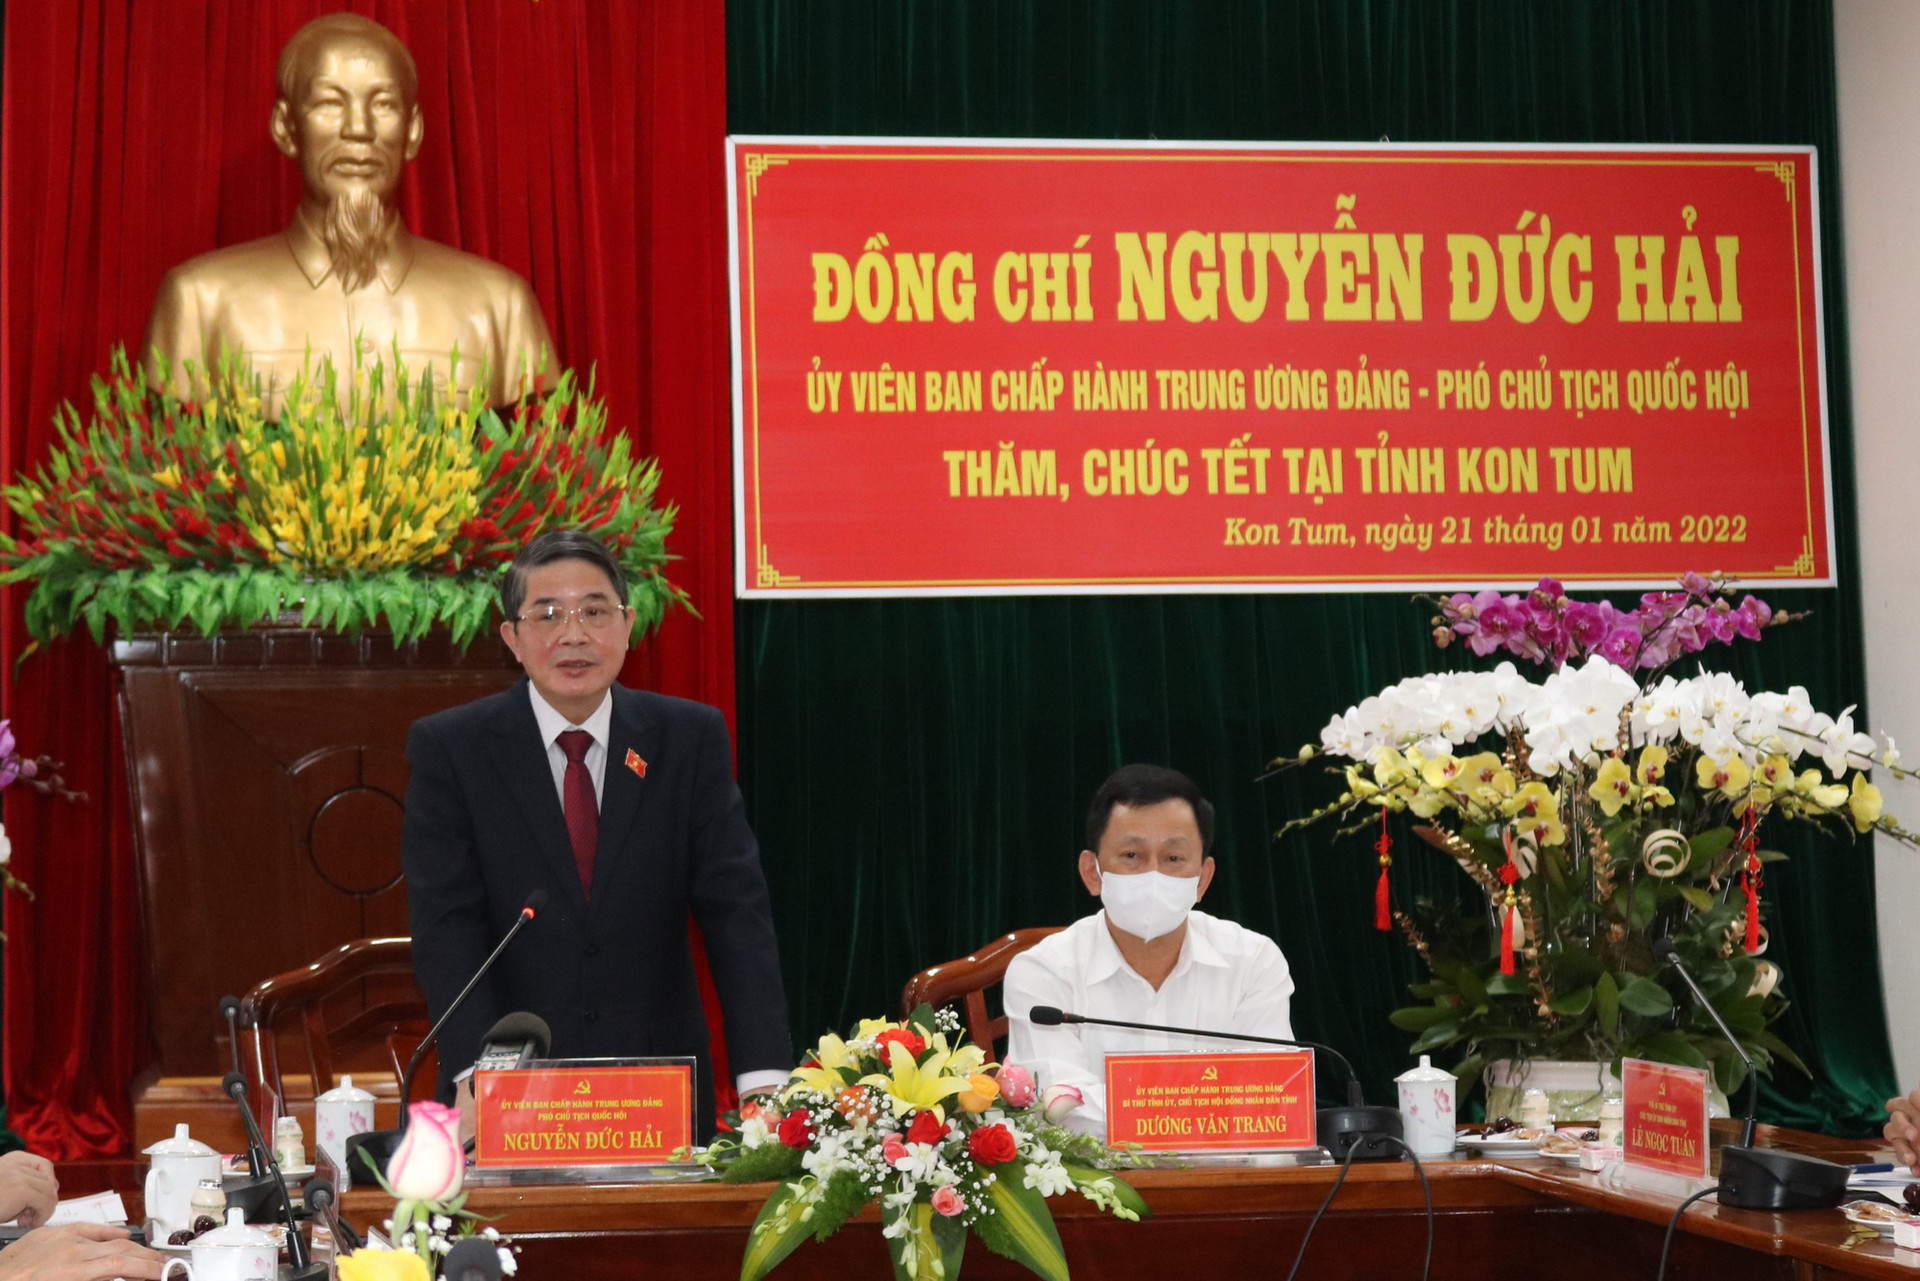 Phó Chủ tịch Quốc hội thăm, chúc Tết tại tỉnh Kon Tum  - Ảnh 1.